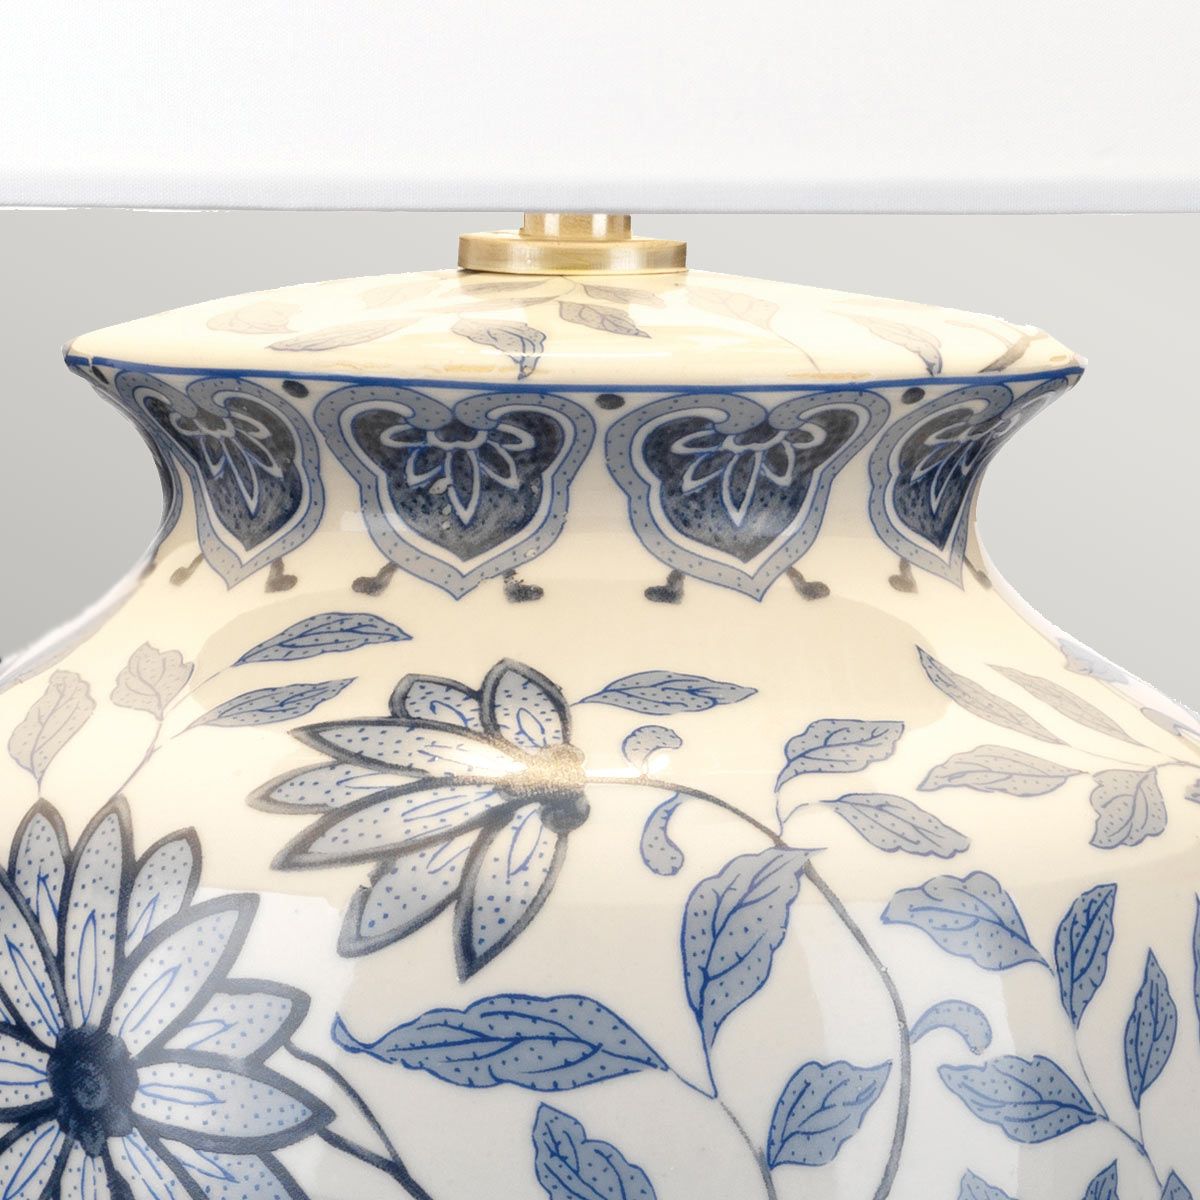 Tischlampe Keramik Stoff E27 65 cm Blau Weiß Klassisch